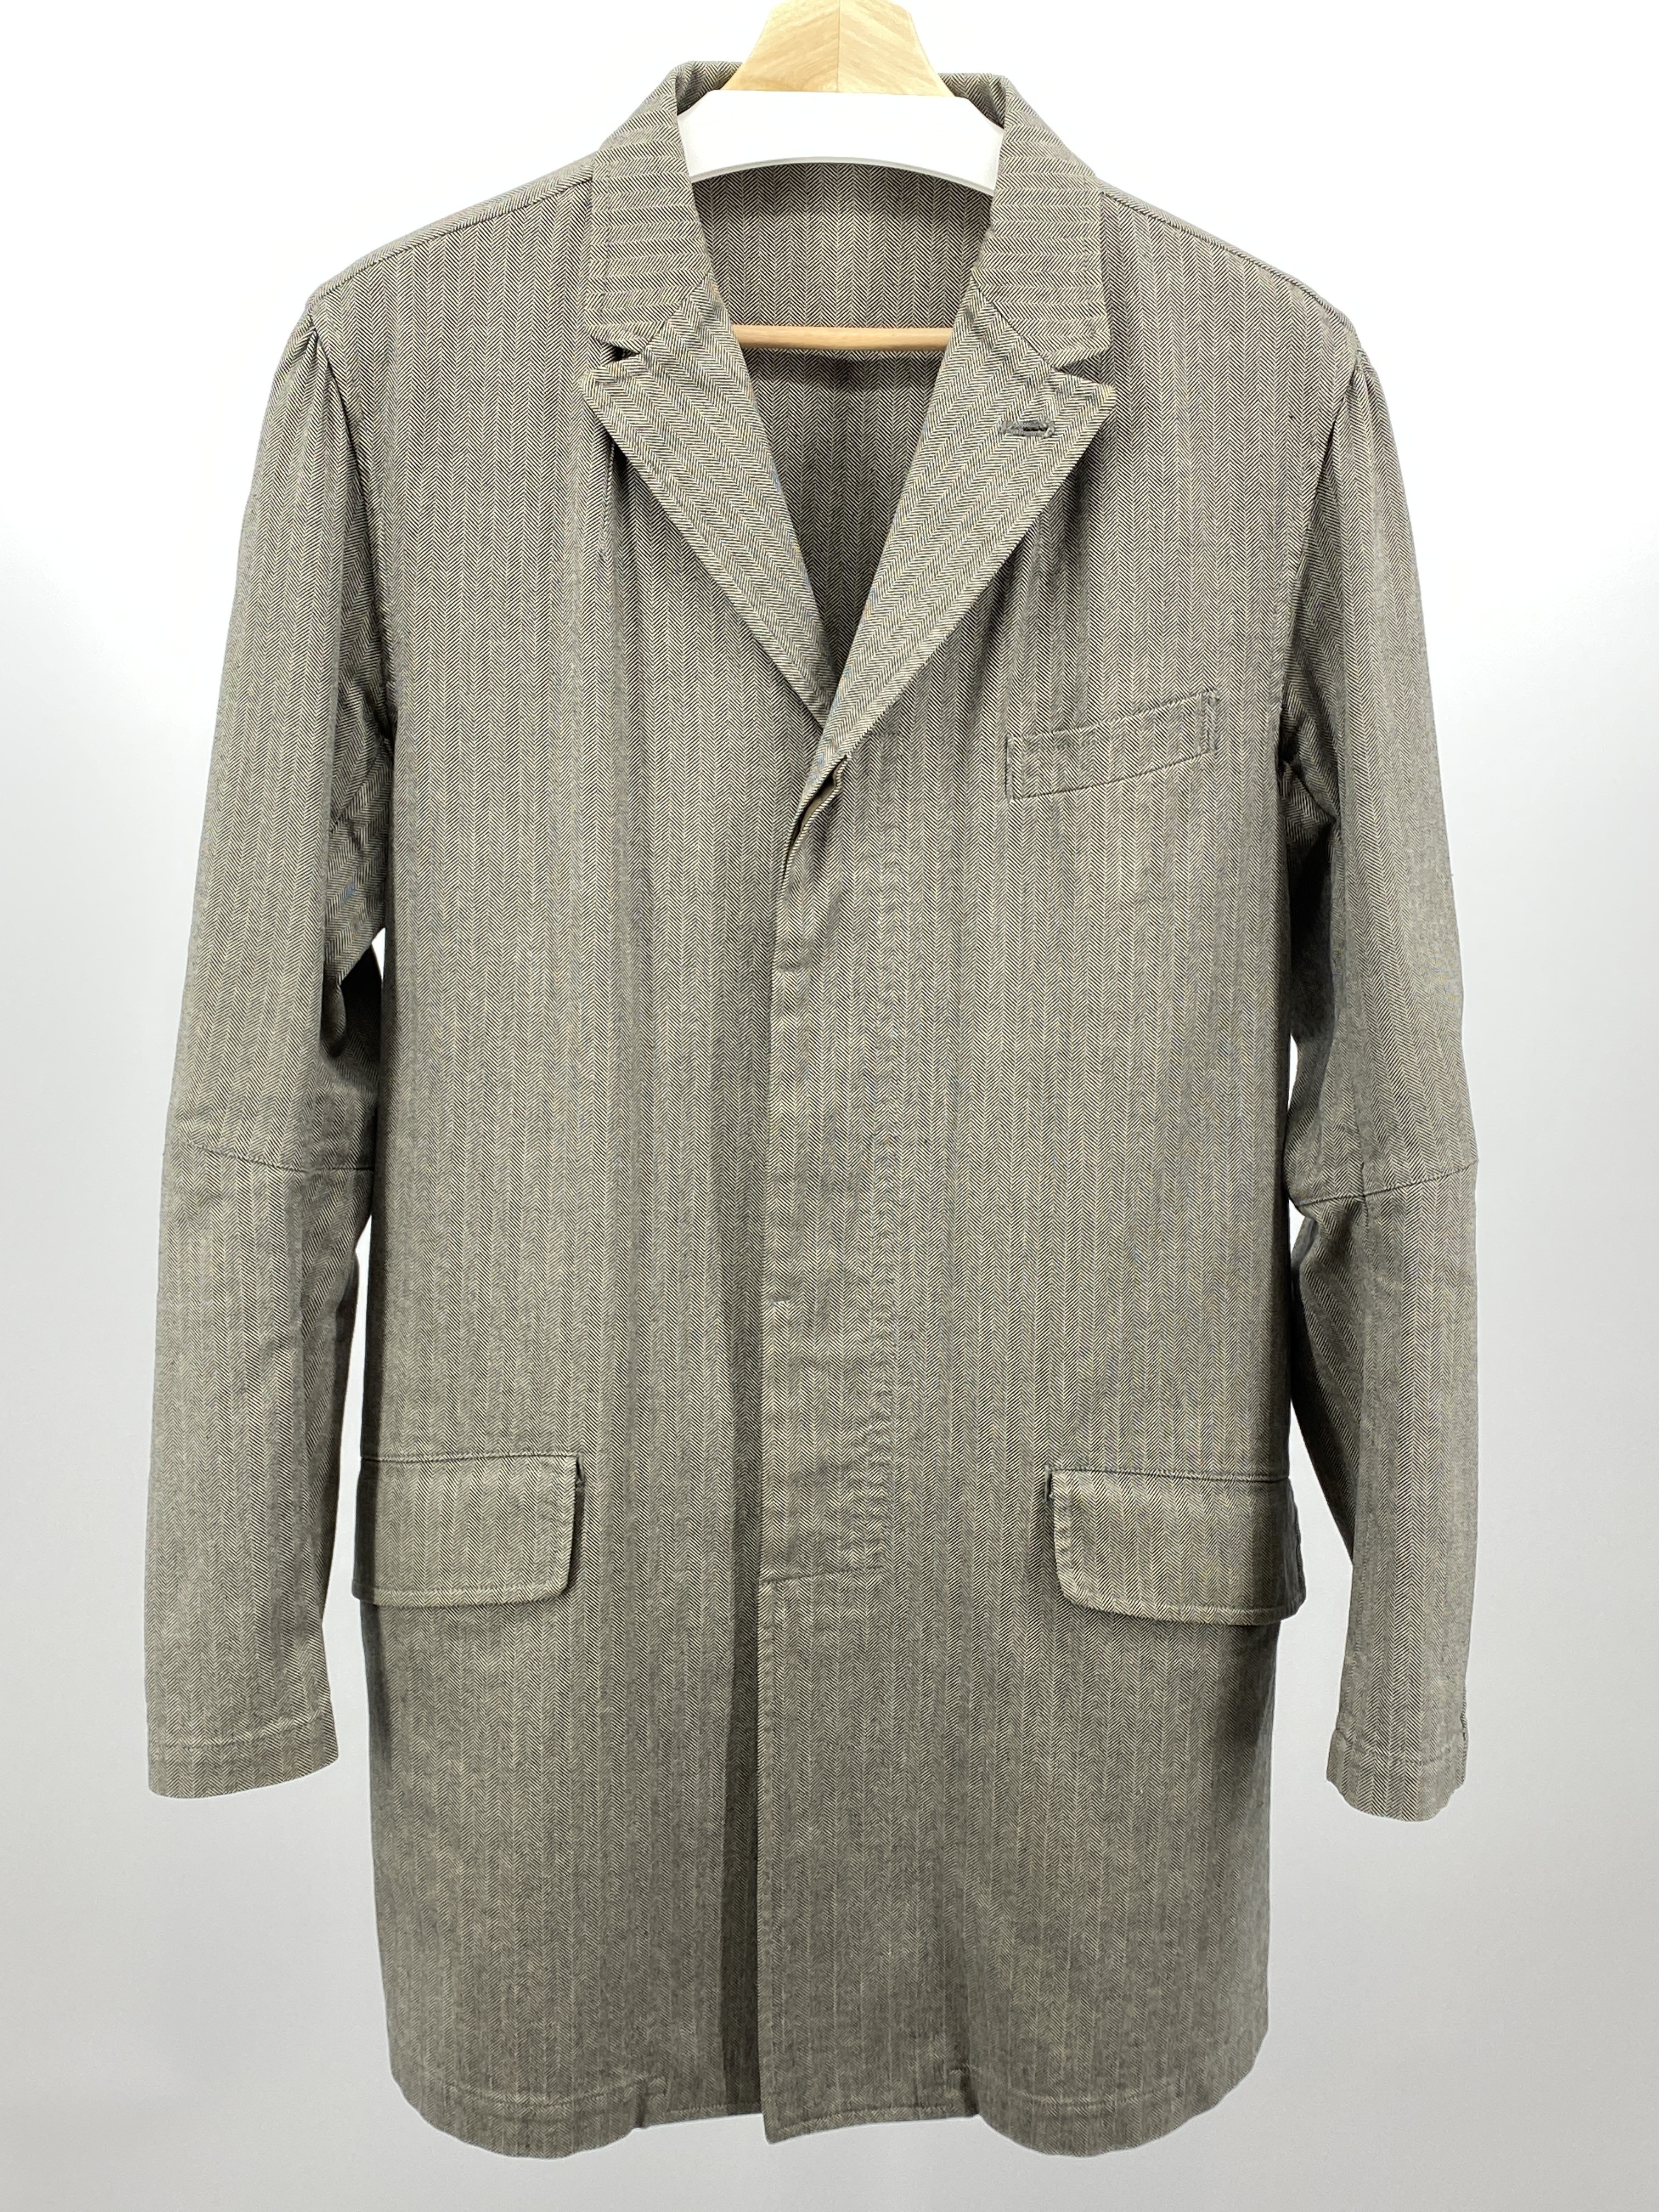 Overcoat Size 2 - 1